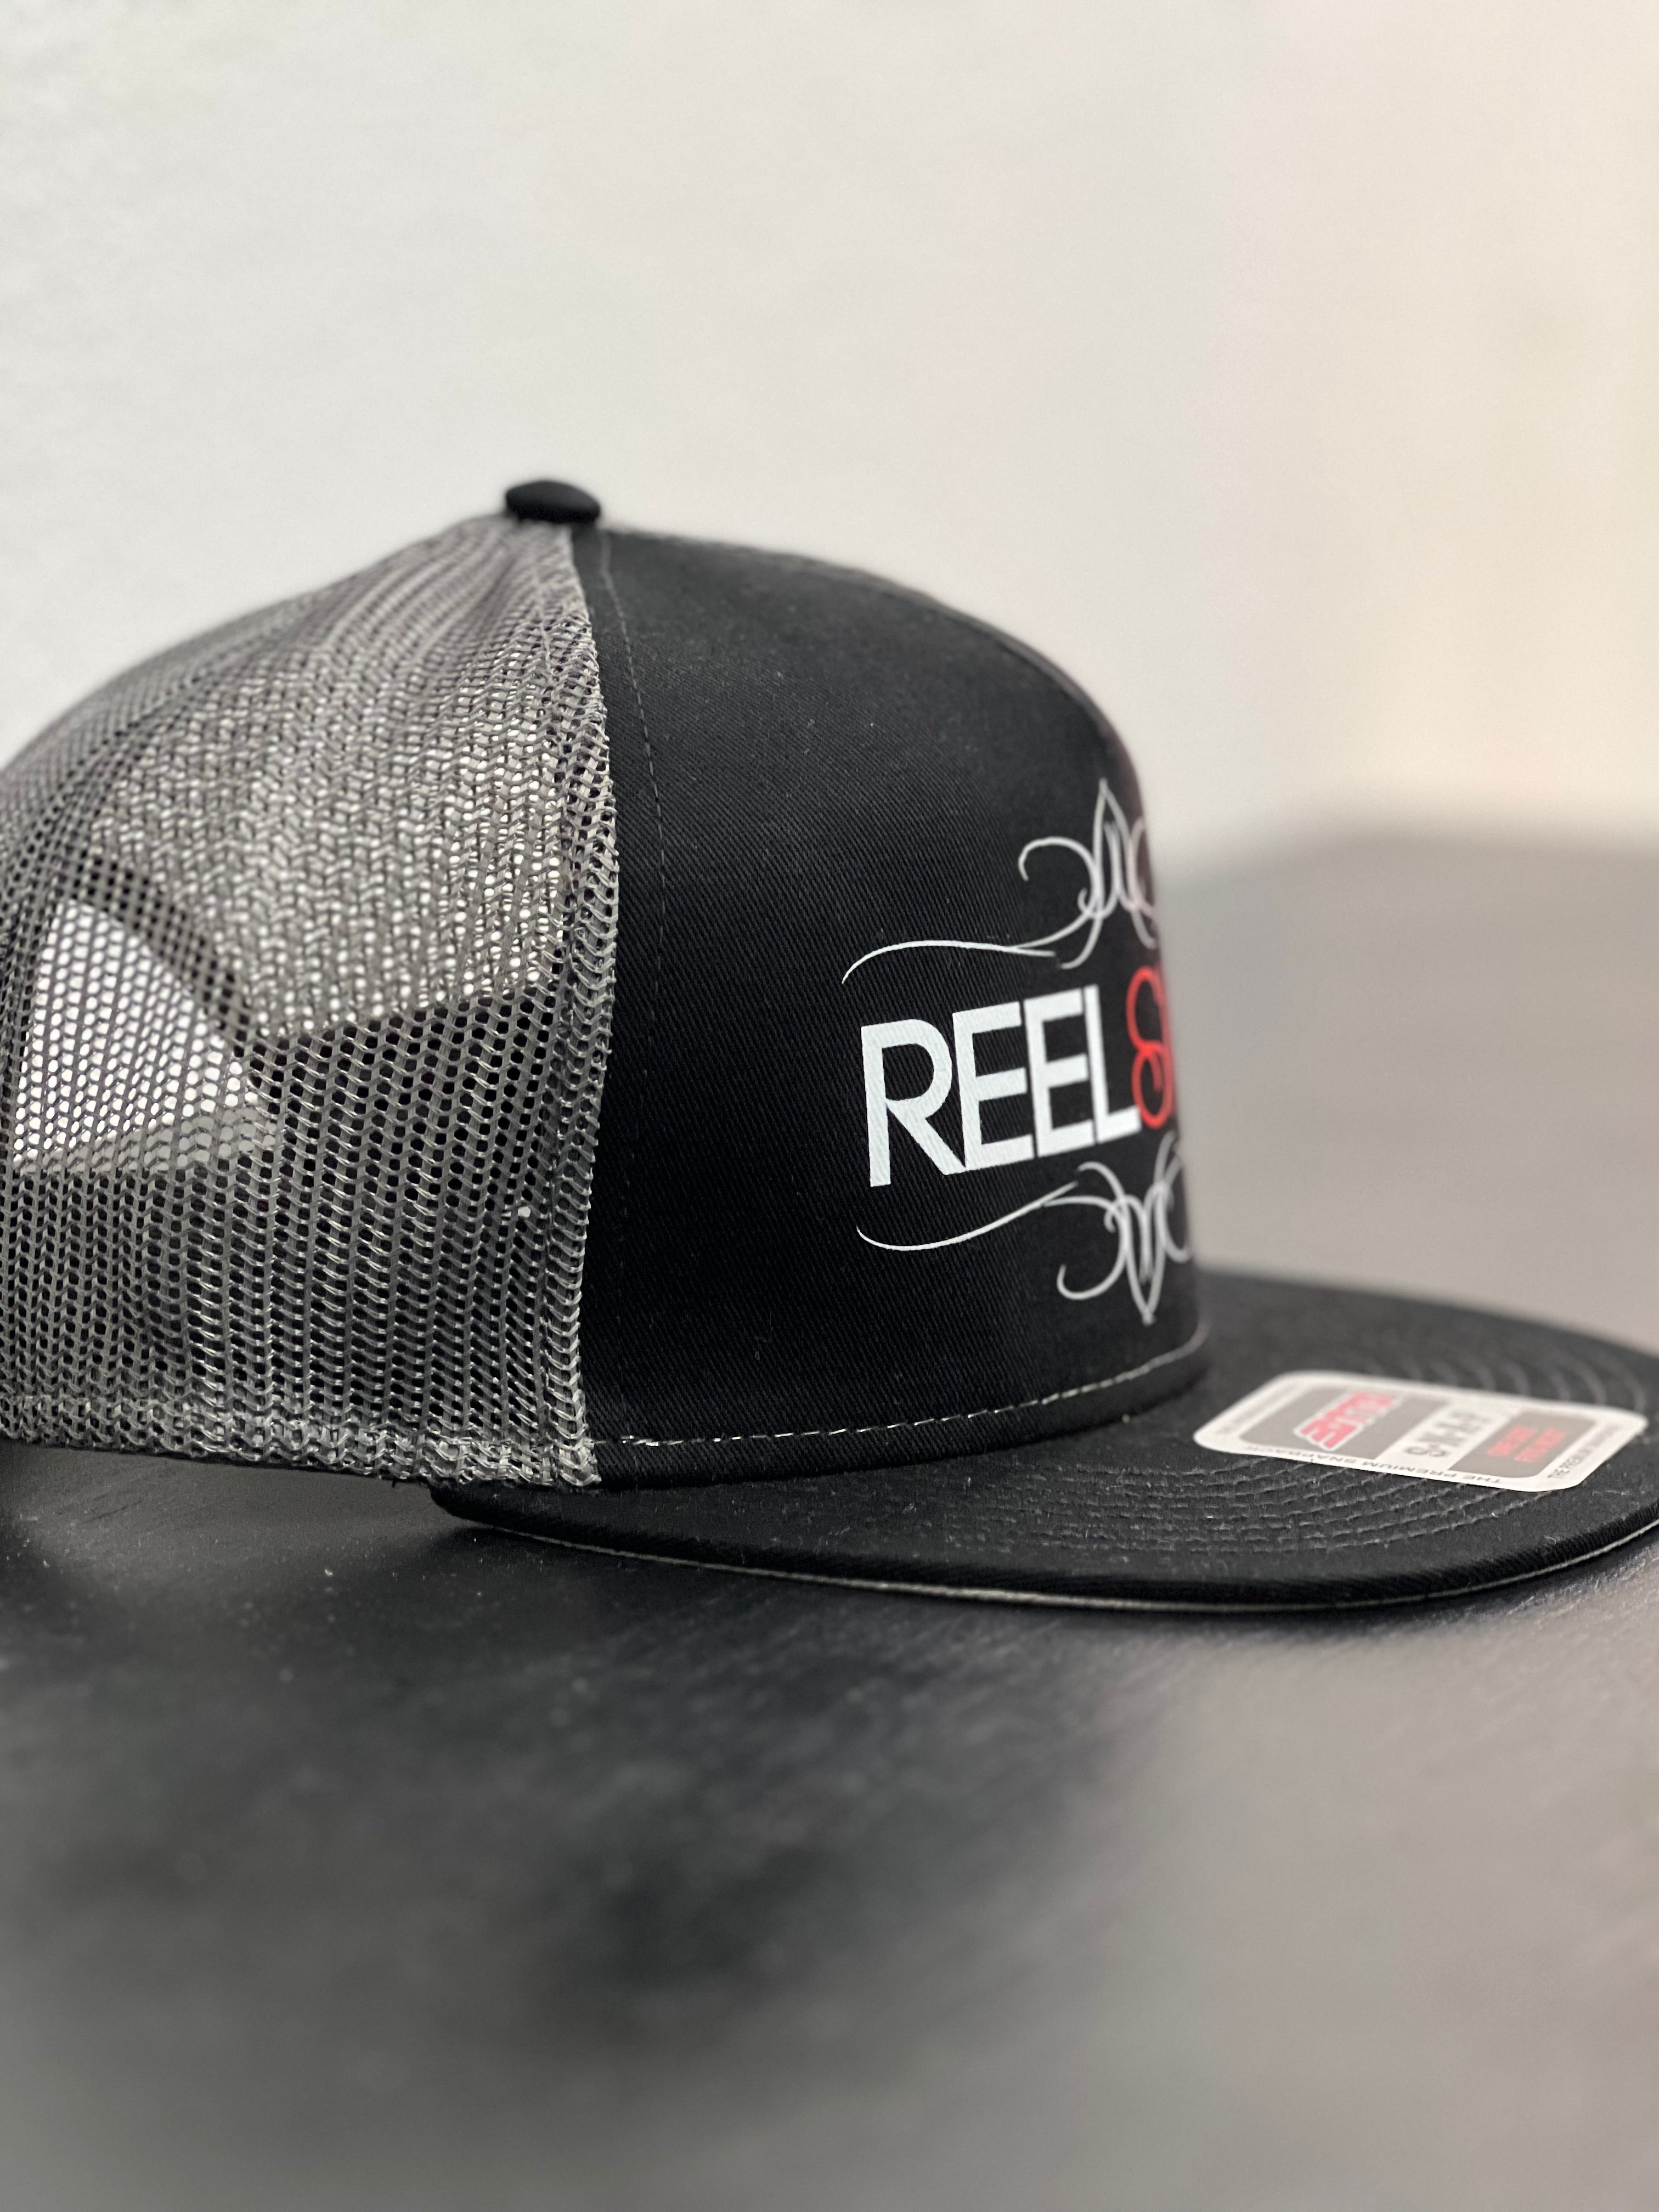 ReelSkin 5 Panel Classic Trucker Hat